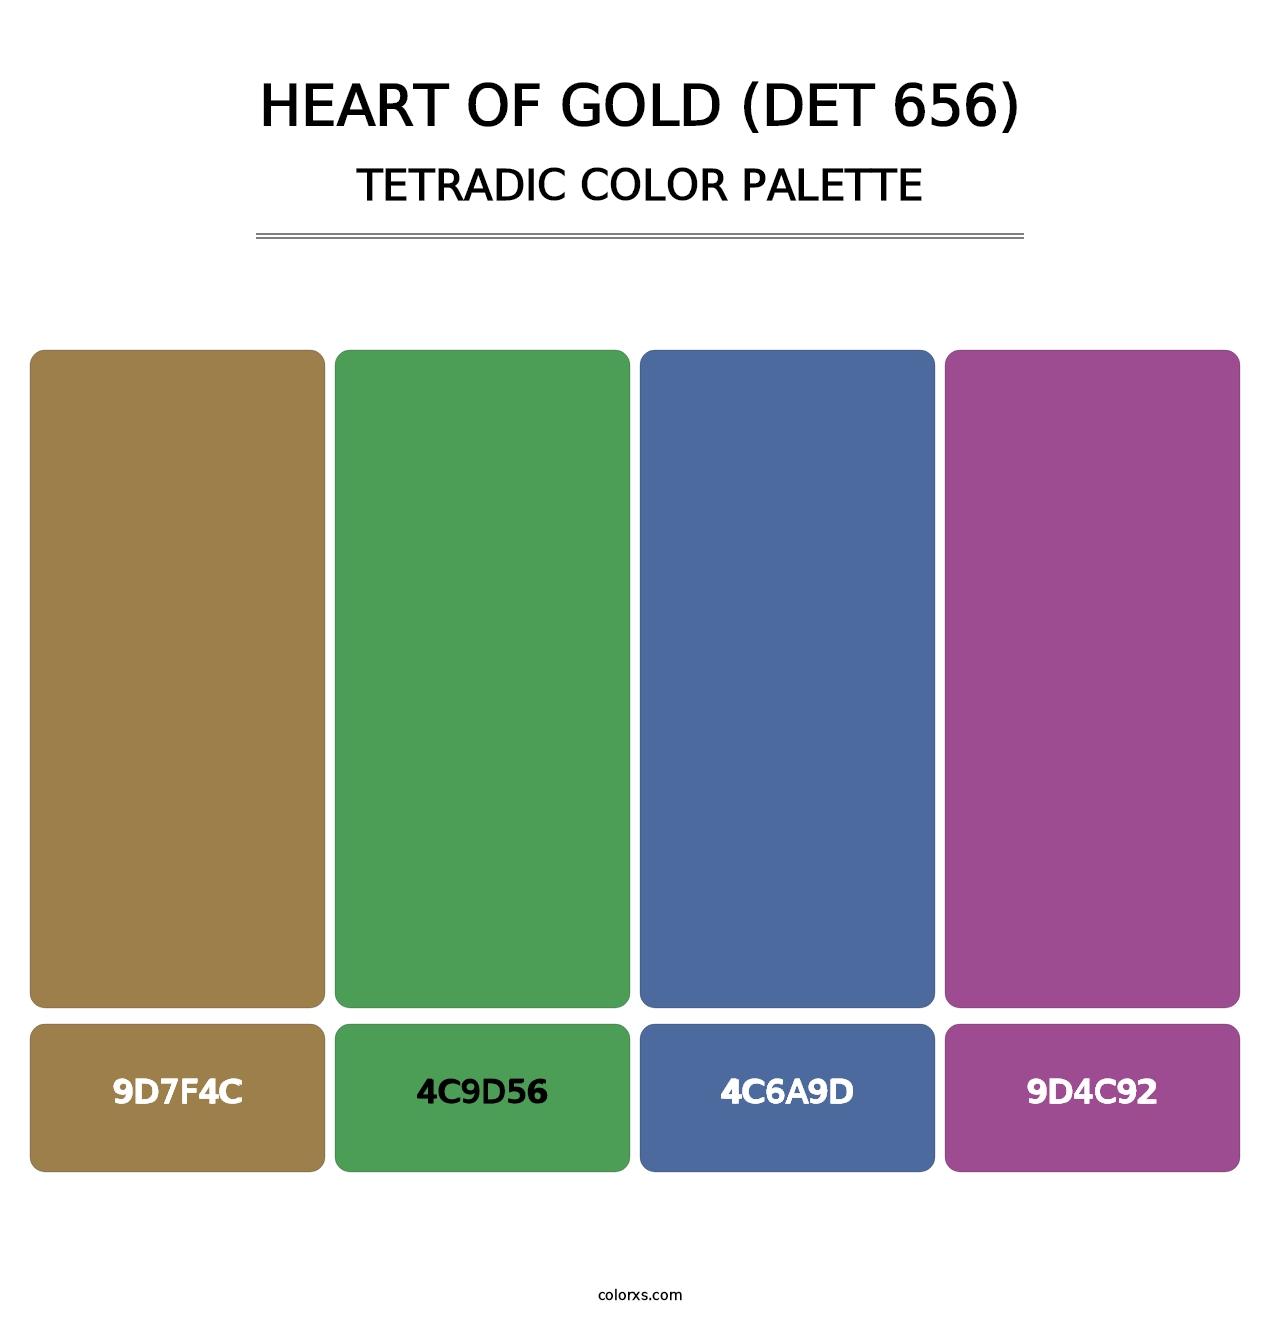 Heart of Gold (DET 656) - Tetradic Color Palette